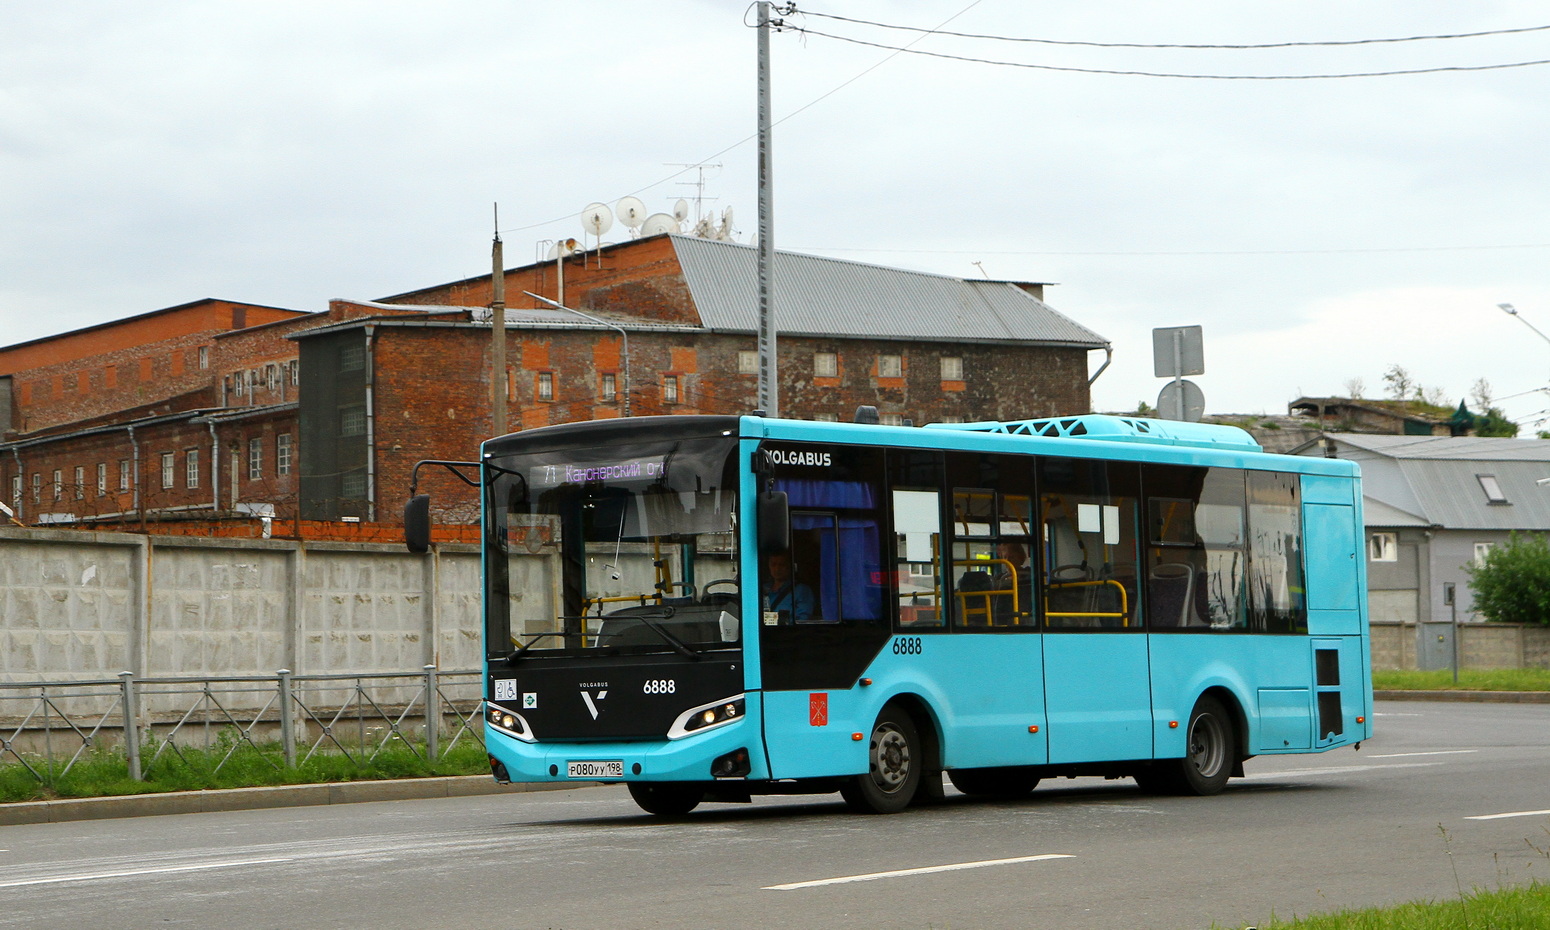 Sanktpēterburga, Volgabus-4298.G4 (LNG) № 6888